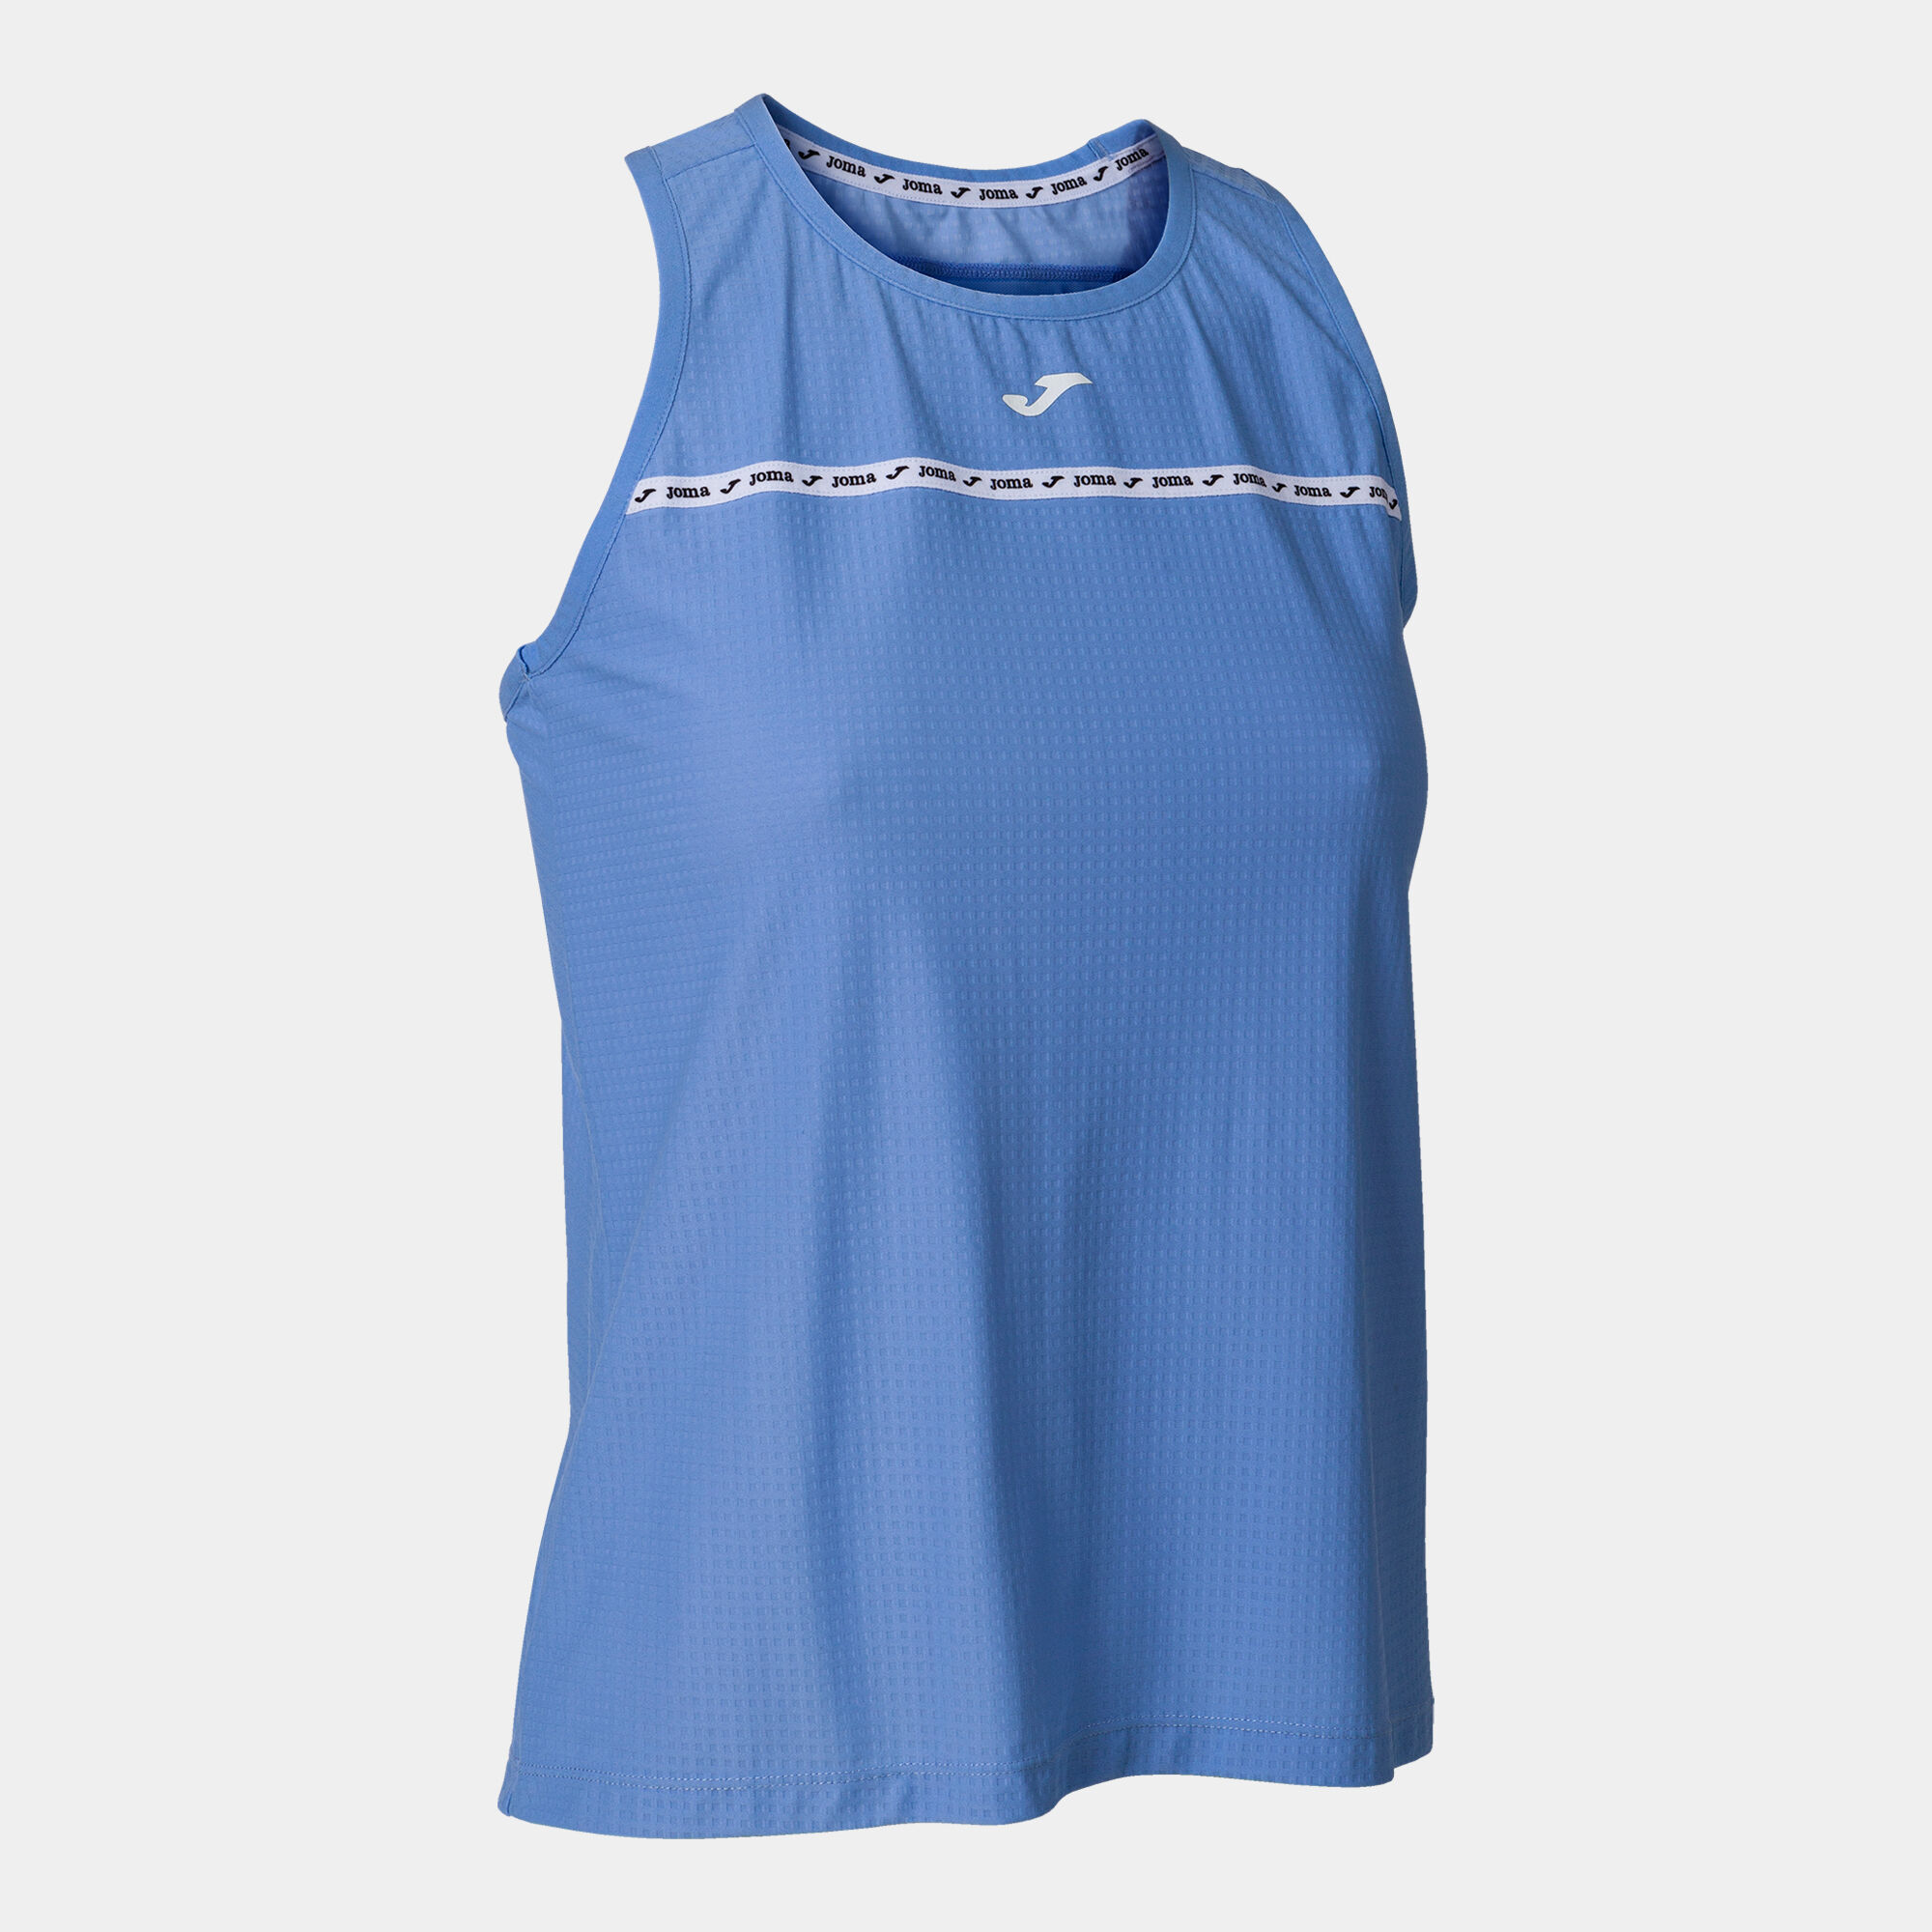 Sleeveless t-shirt woman Urban Street blue